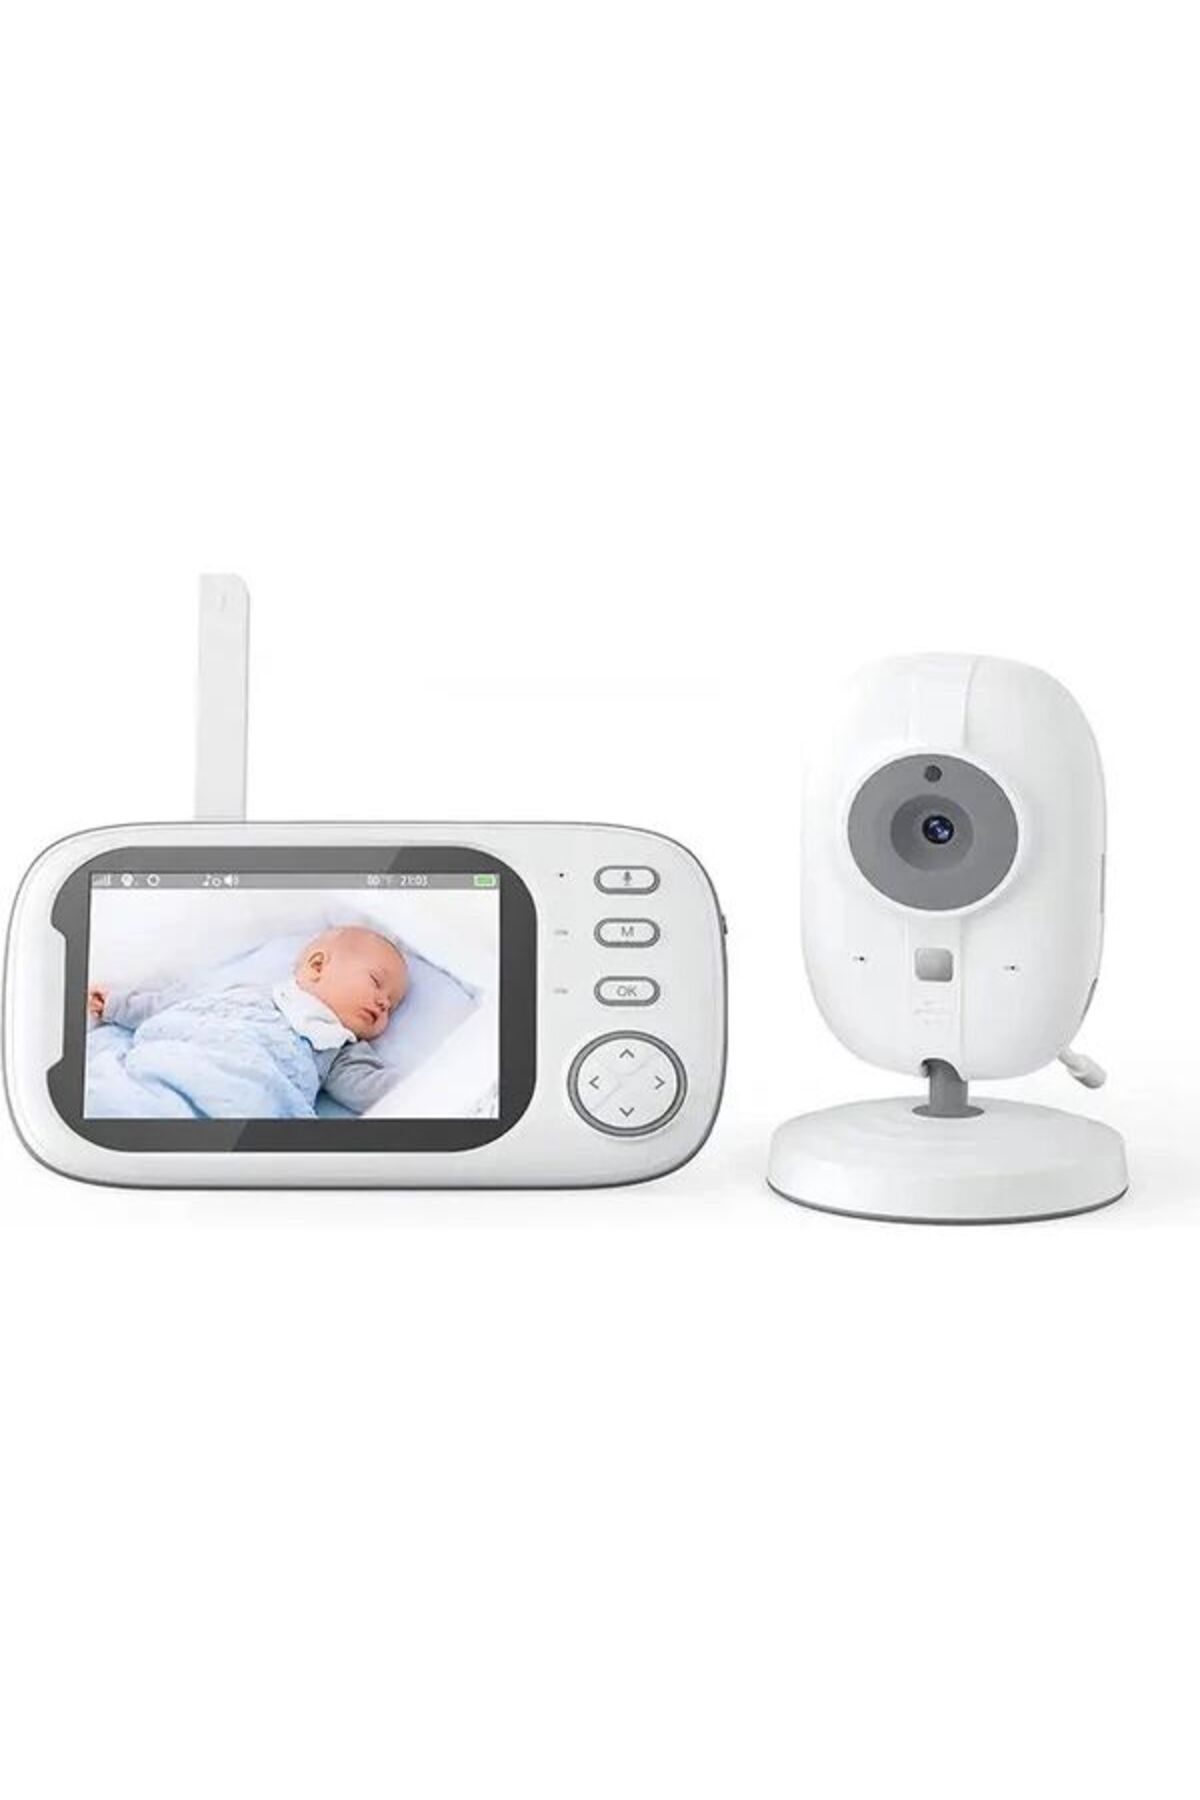 ÇELİKWORK Bebek Izleme Monitörü Oda Sıcaklık Algılama 3.5inç Ekran 720p 2.4ghz